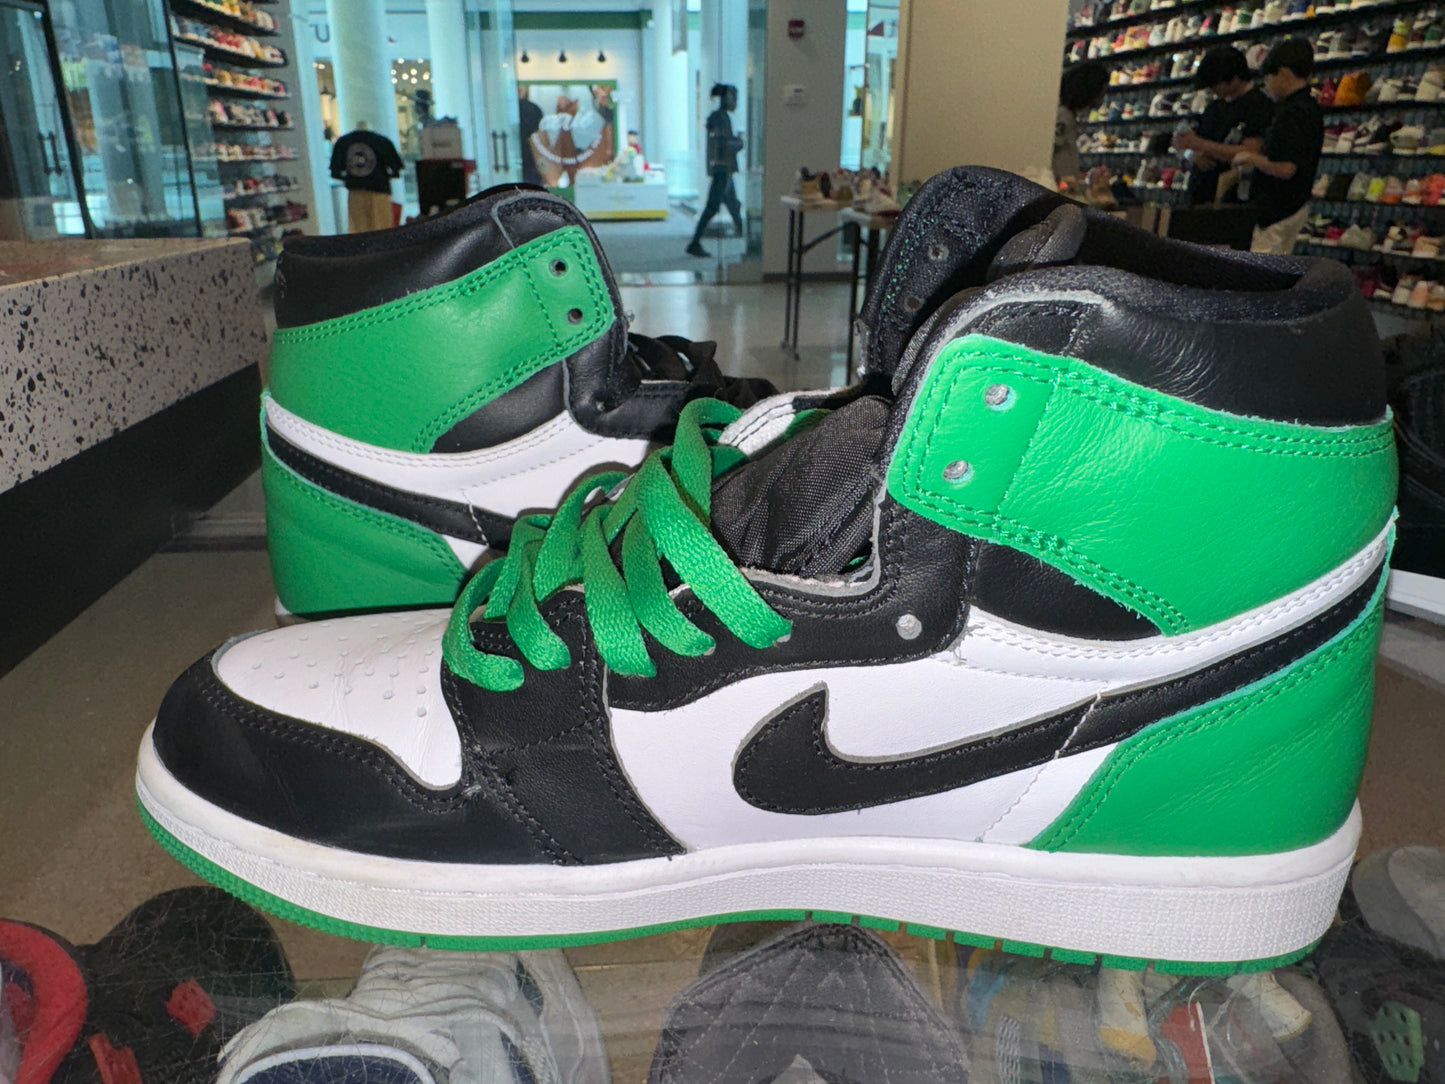 Size 7 Air Jordan 1 “Lucky Green” (Mall)